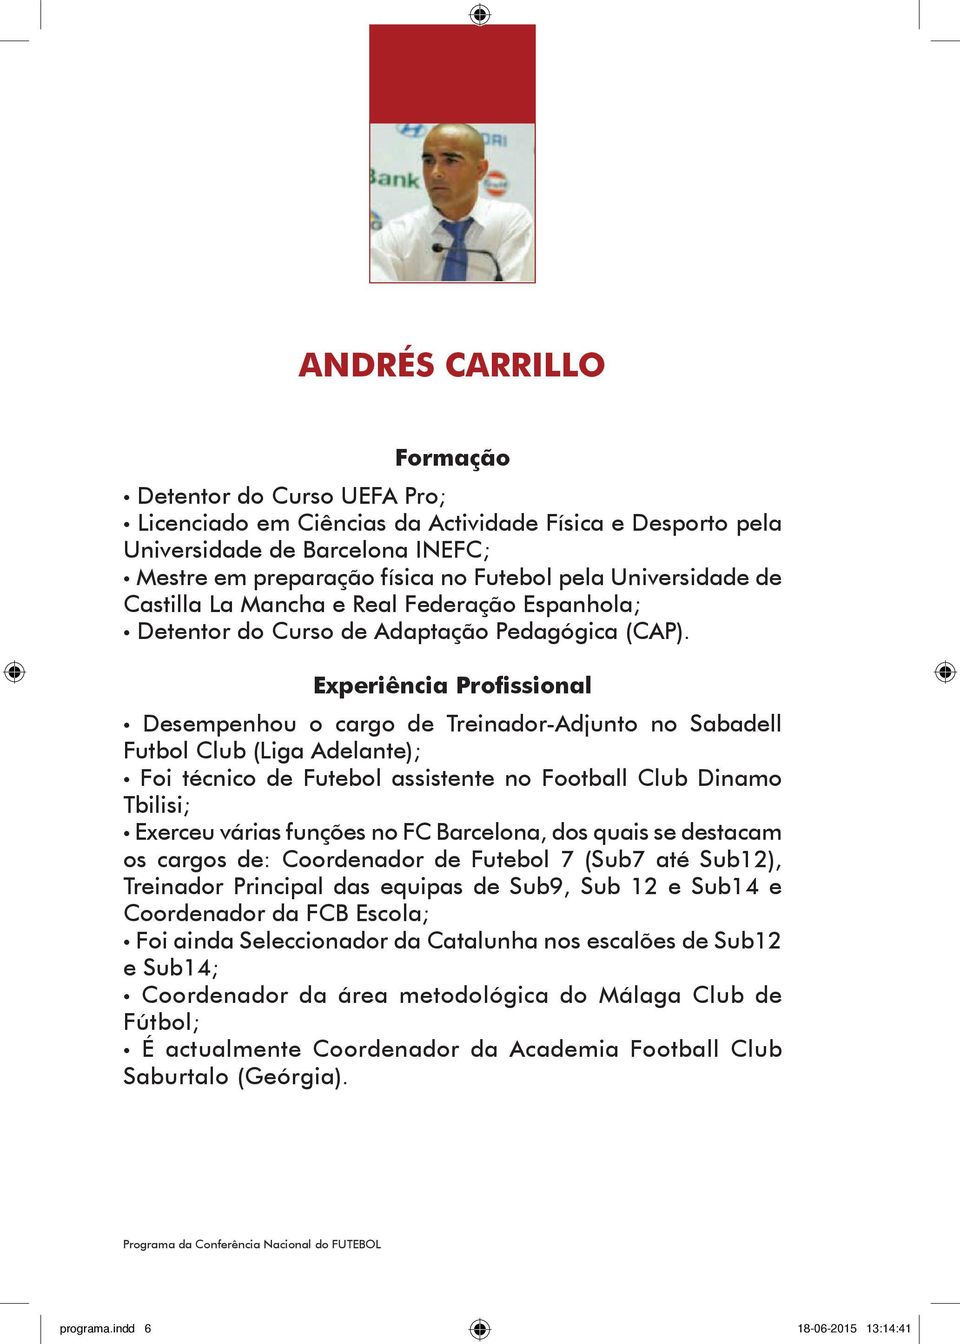 Desempenhou o cargo de Treinador-Adjunto no Sabadell Futbol Club (Liga Adelante); Foi técnico de Futebol assistente no Football Club Dinamo Tbilisi; Exerceu várias funções no FC Barcelona, dos quais